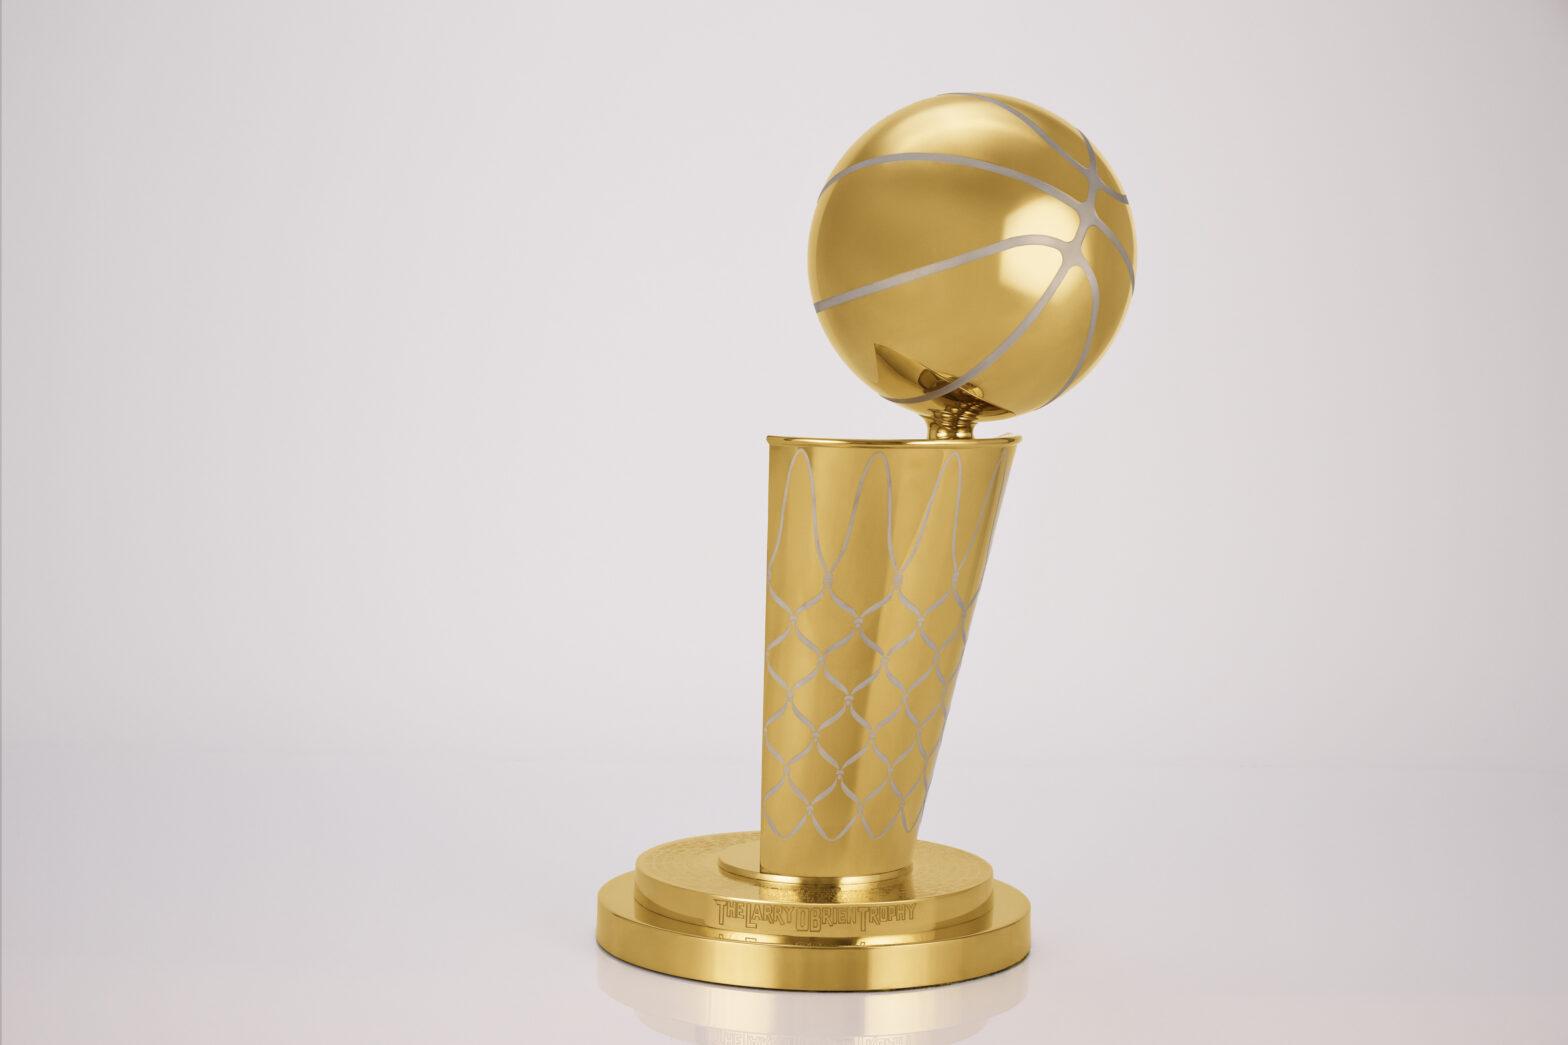 Larry O'Brien Trophy